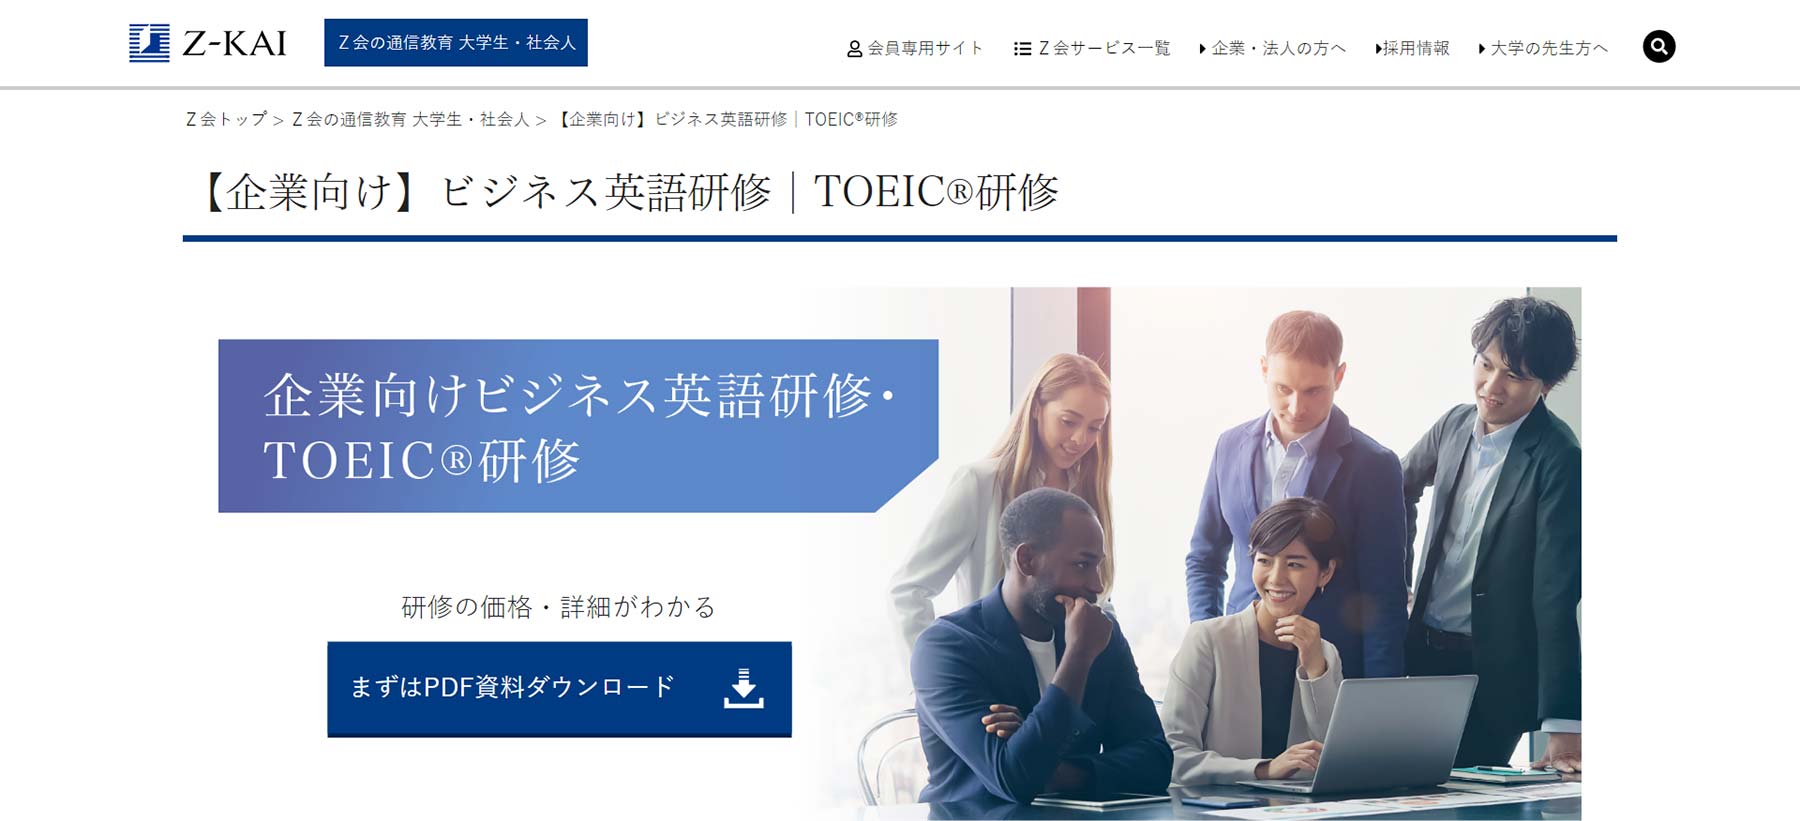 【企業向け】ビジネス英語研修│TOEIC®研修公式Webサイト